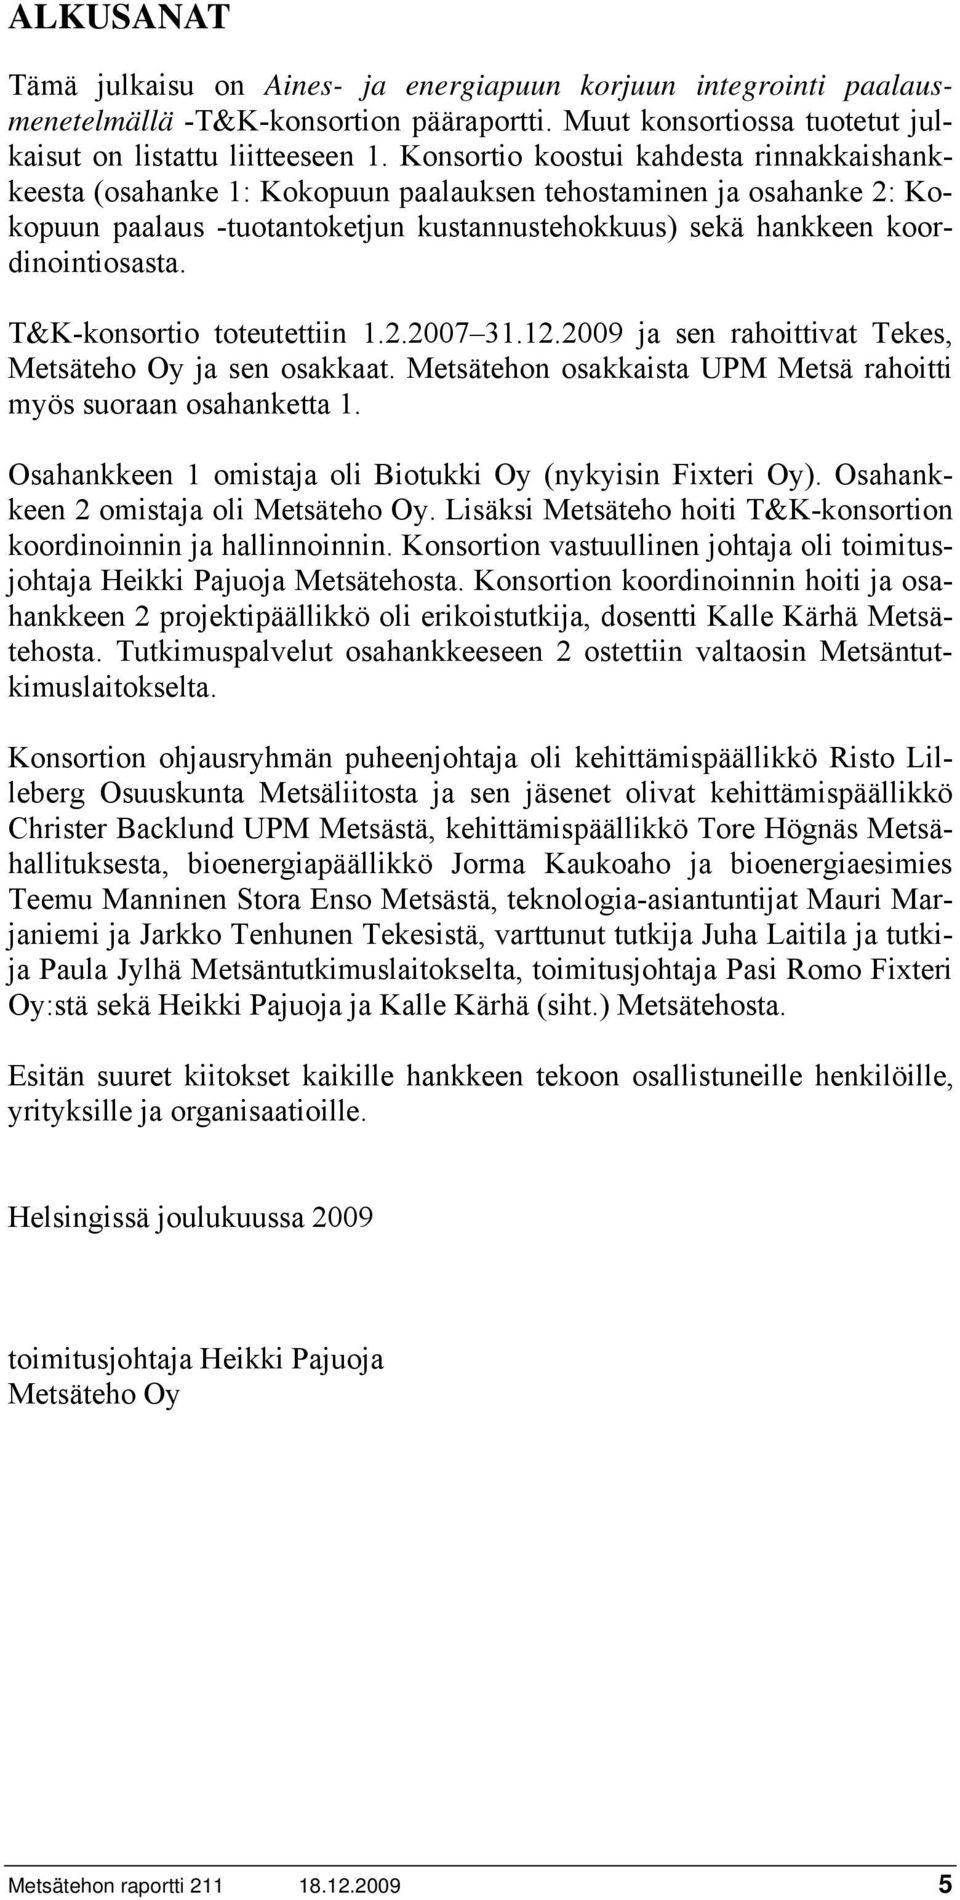 T&K-konsortio toteutettiin 1.2.2007 31.12.2009 ja sen rahoittivat Tekes, Metsäteho Oy ja sen osakkaat. Metsätehon osakkaista UPM Metsä rahoitti myös suoraan osahanketta 1.